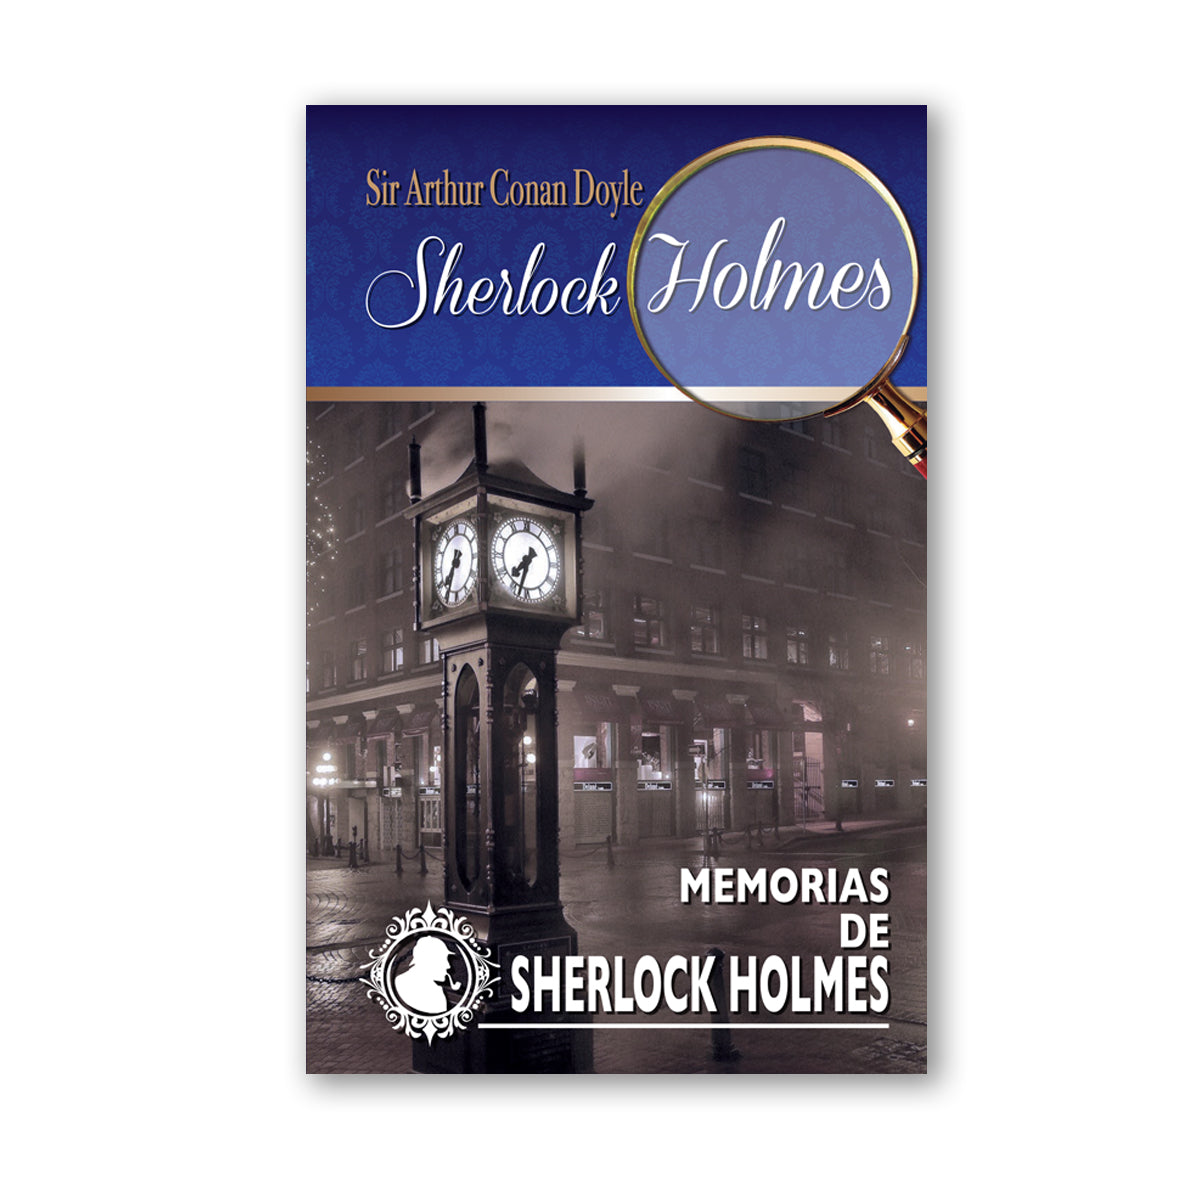 Colección Sherlock Holmes "Memorias de Sherlock Holmes"